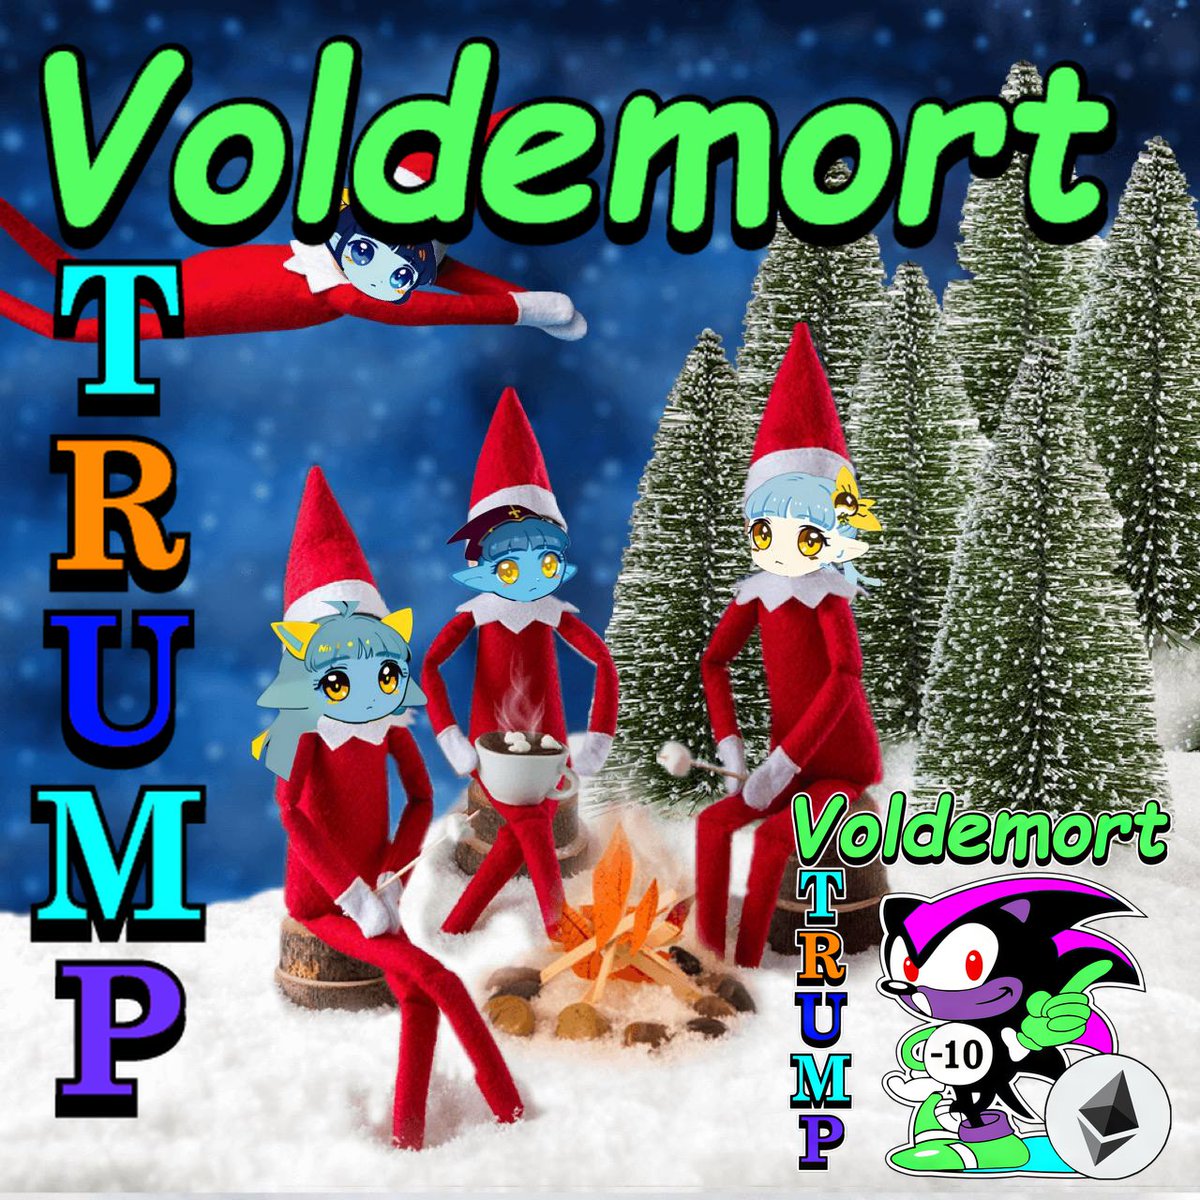 #VoldemortTrumpRobotnik10Neko